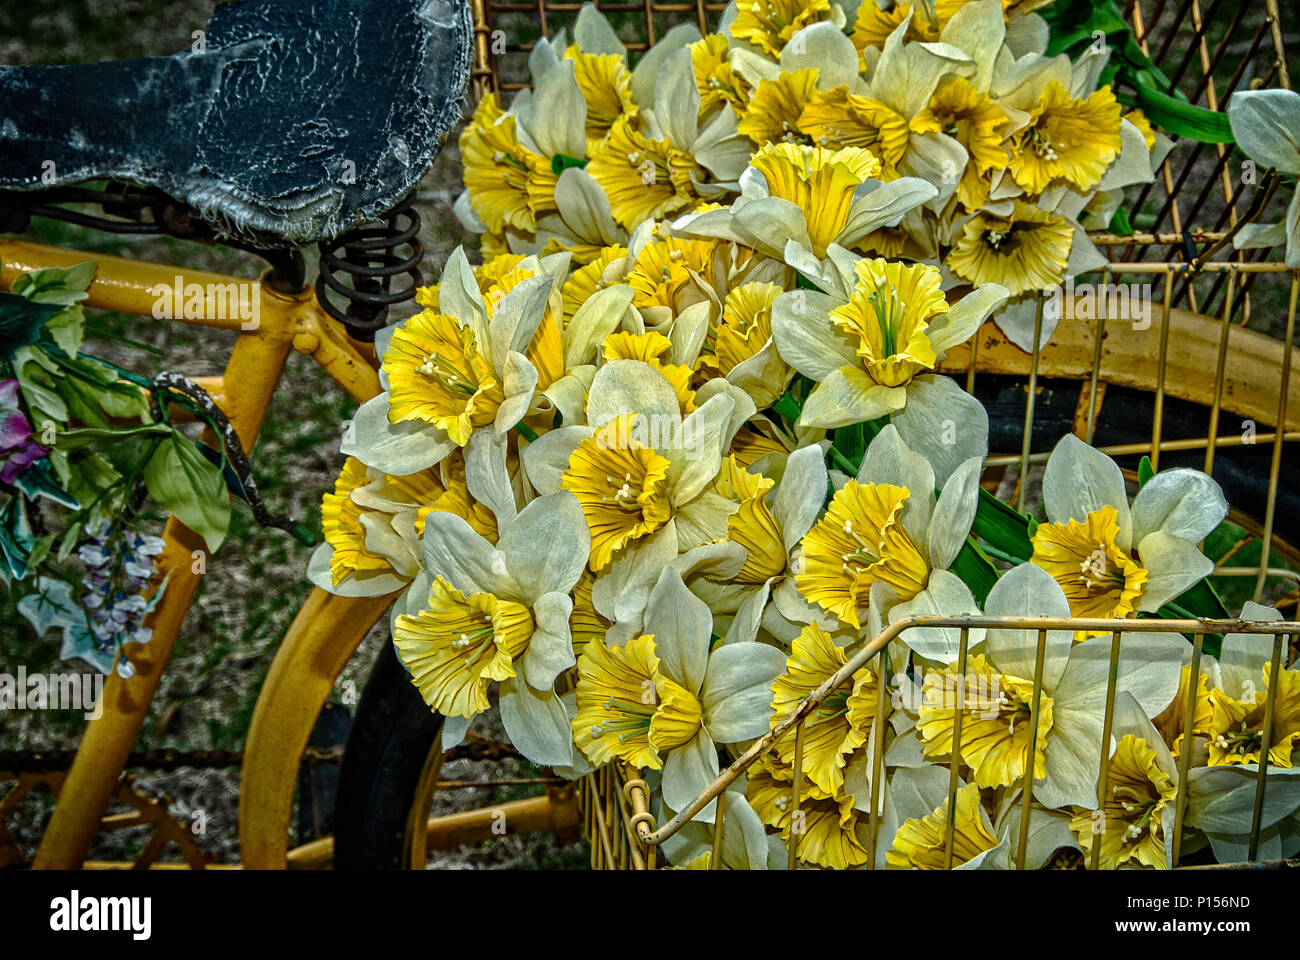 Altes Fahrrad und Gelbe Blumen Stockfotografie - Alamy